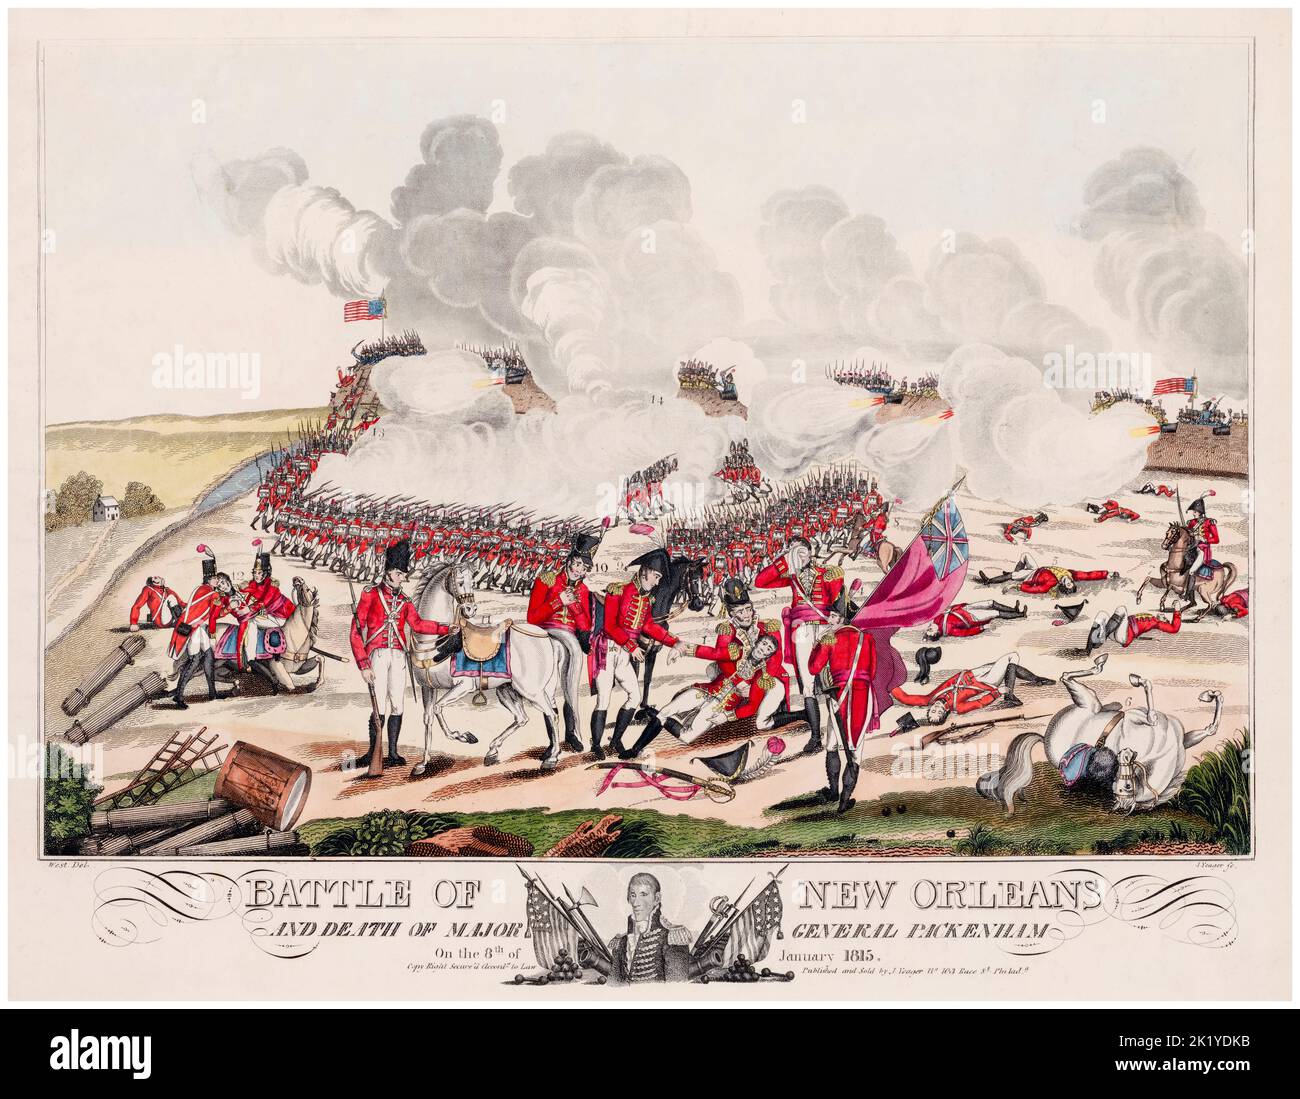 La Batalla de Nueva Orleans y la Muerte del Mayor General Packenham (sic) El 8th de enero de 1815, grabado en aguatinta de William Edward West (artista) y Joseph Yeager (grabador), 1817 Foto de stock